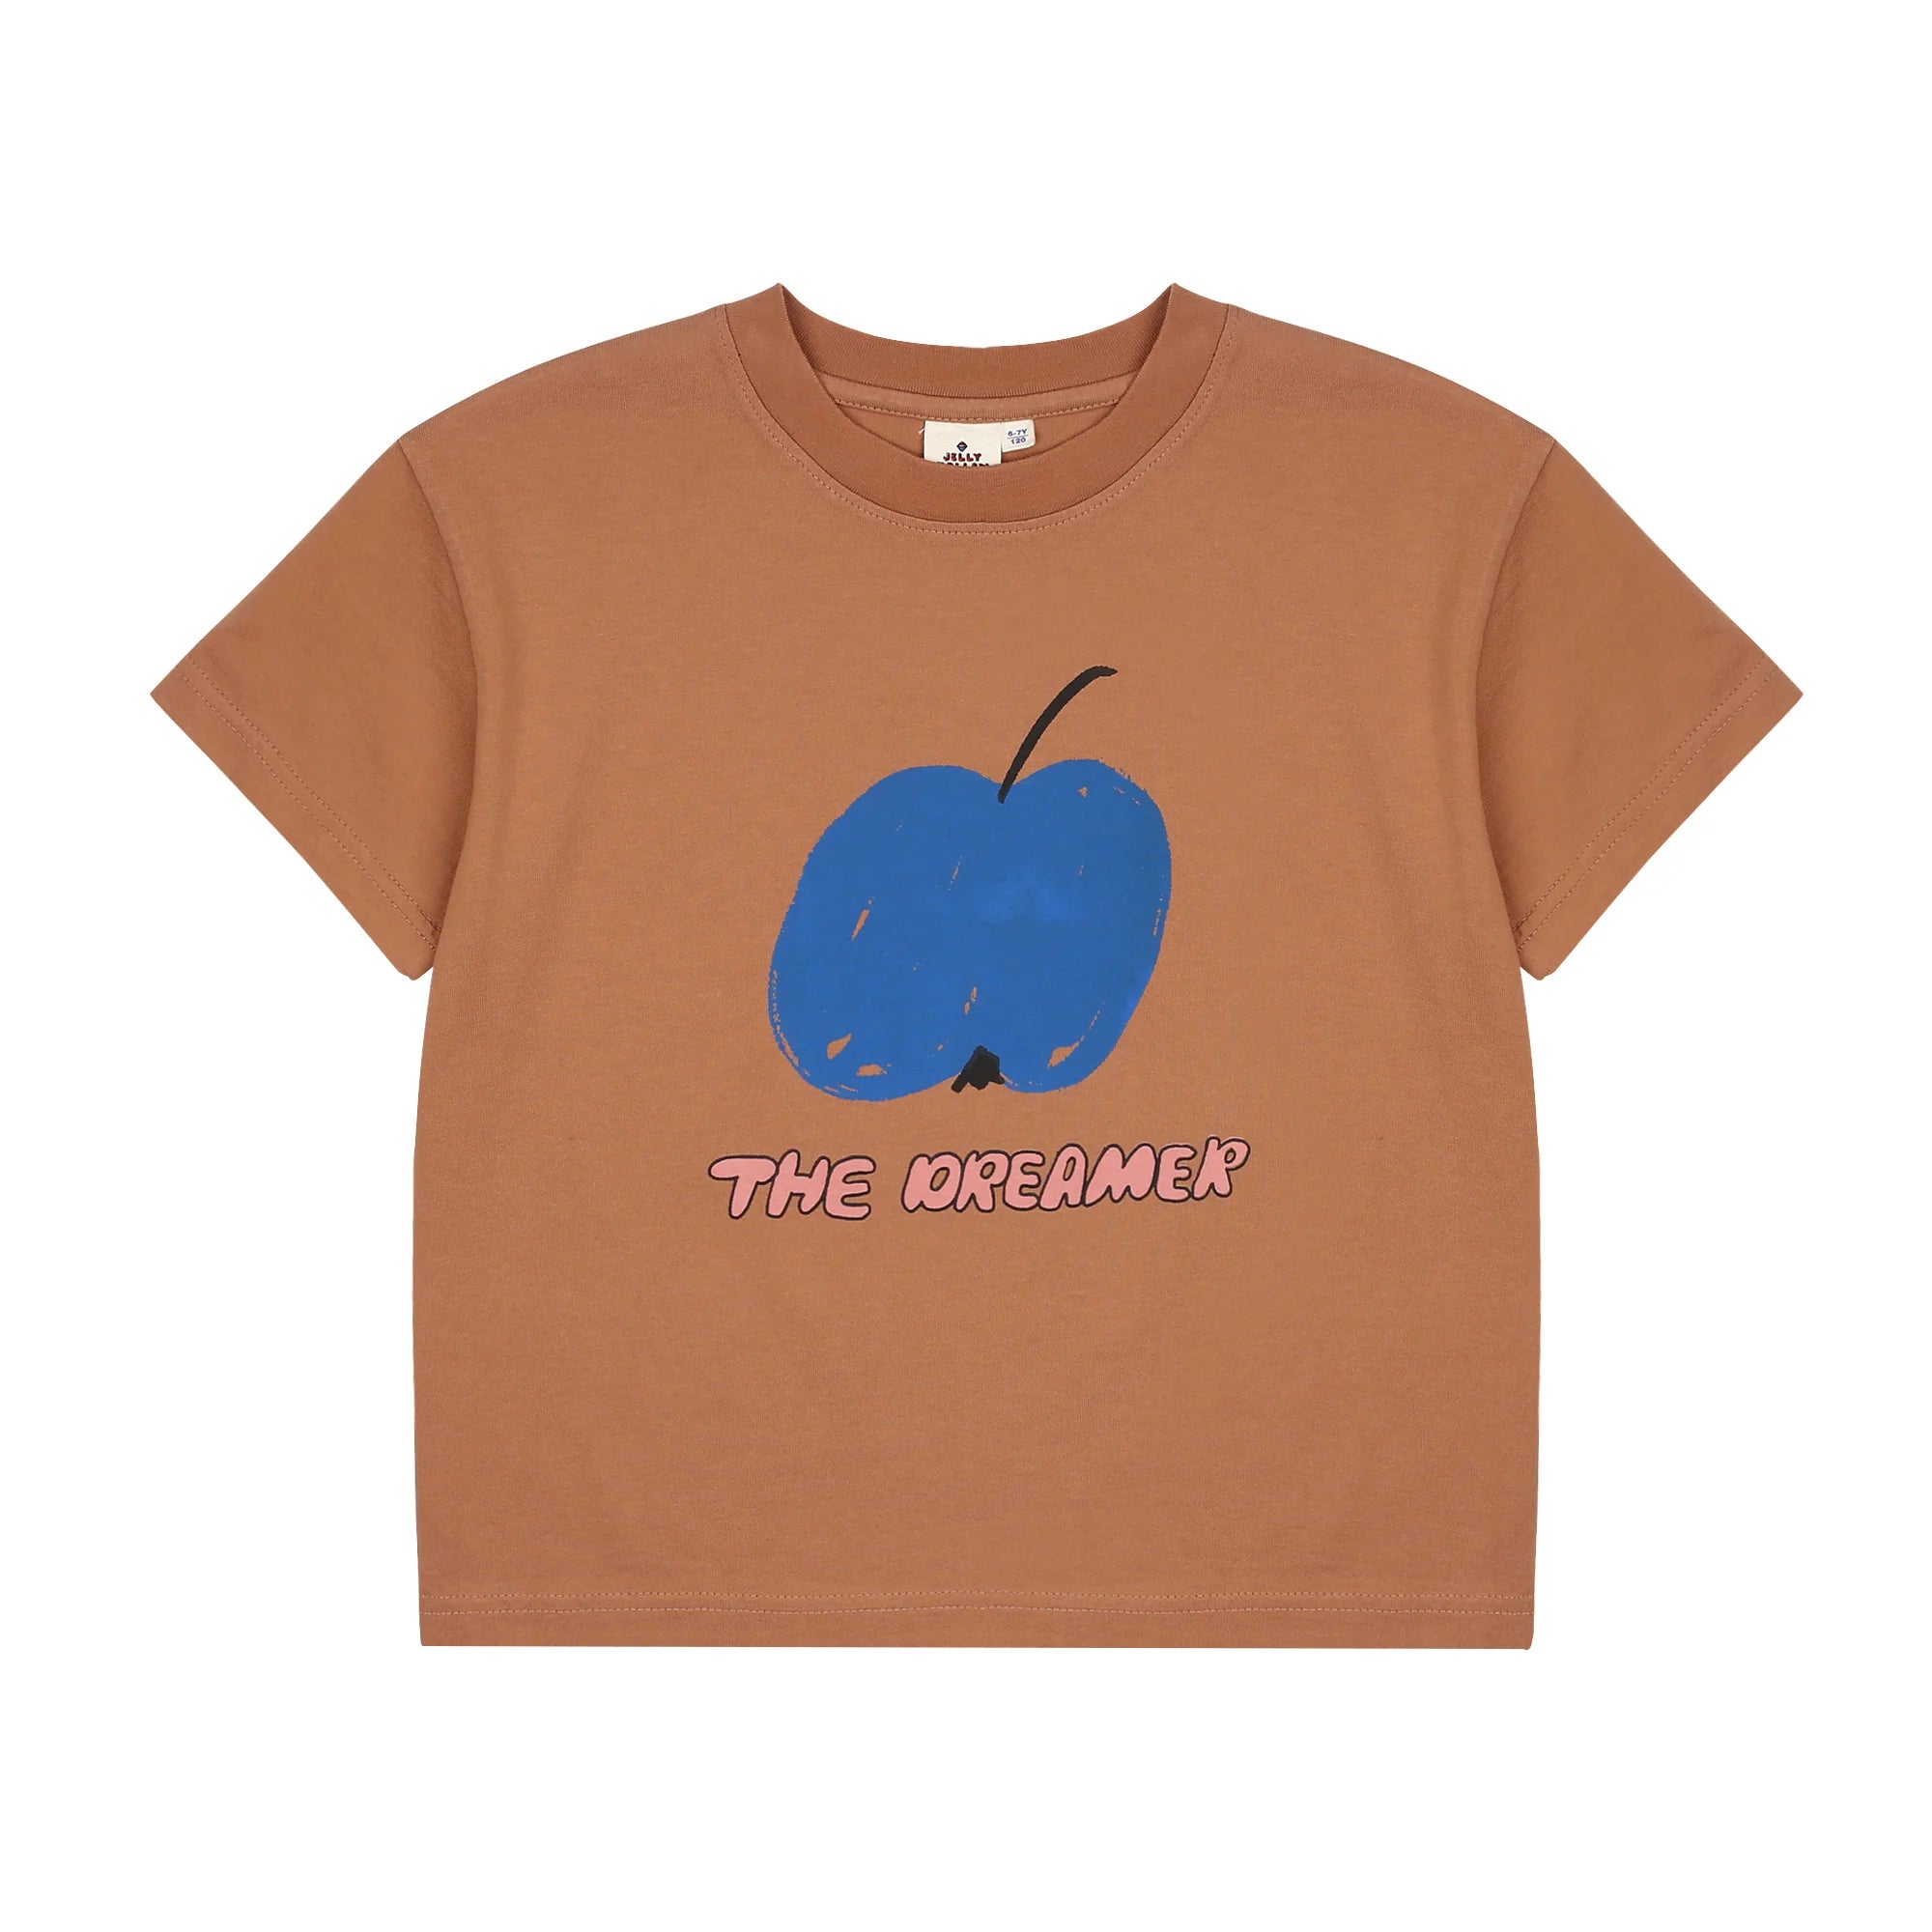 Jelly Mallow - blue apple t-shirt